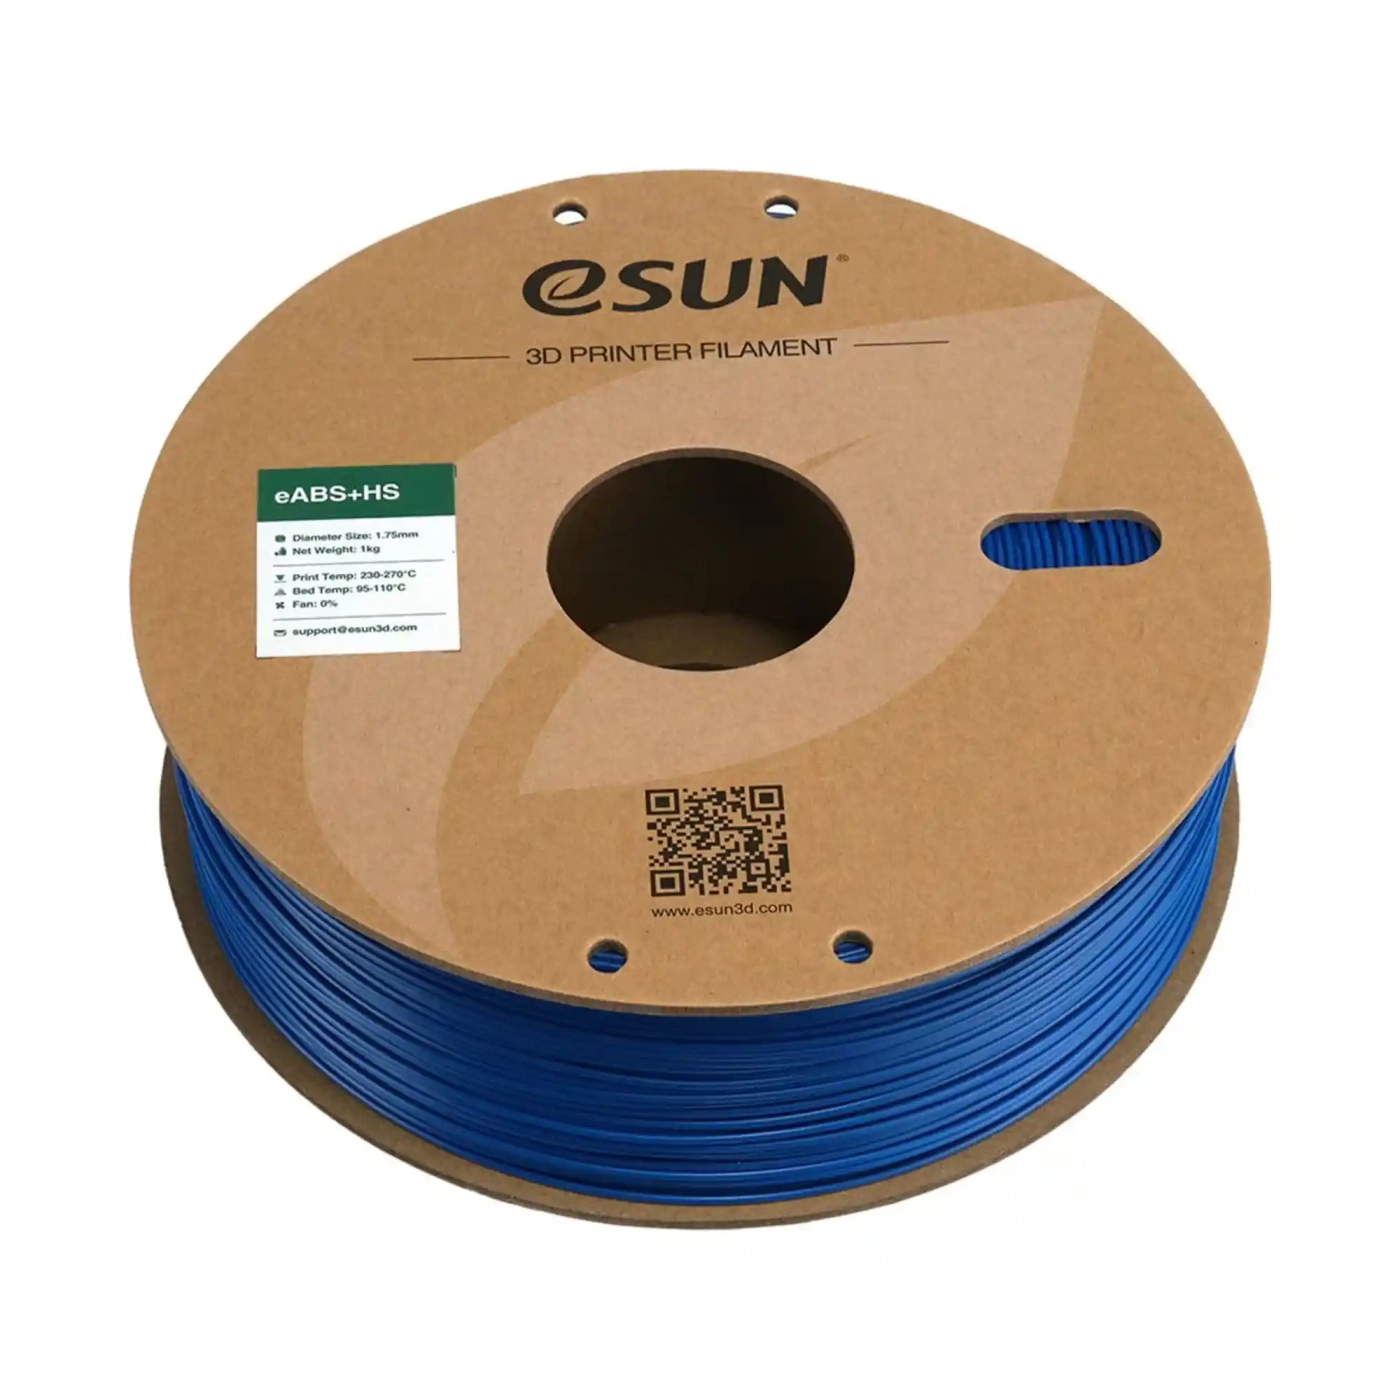 Купити eABS+HS Filament (пластик) для 3D принтера Esun 1кг, 1.75мм, синій (eABS+HS-175U1) - фото 3